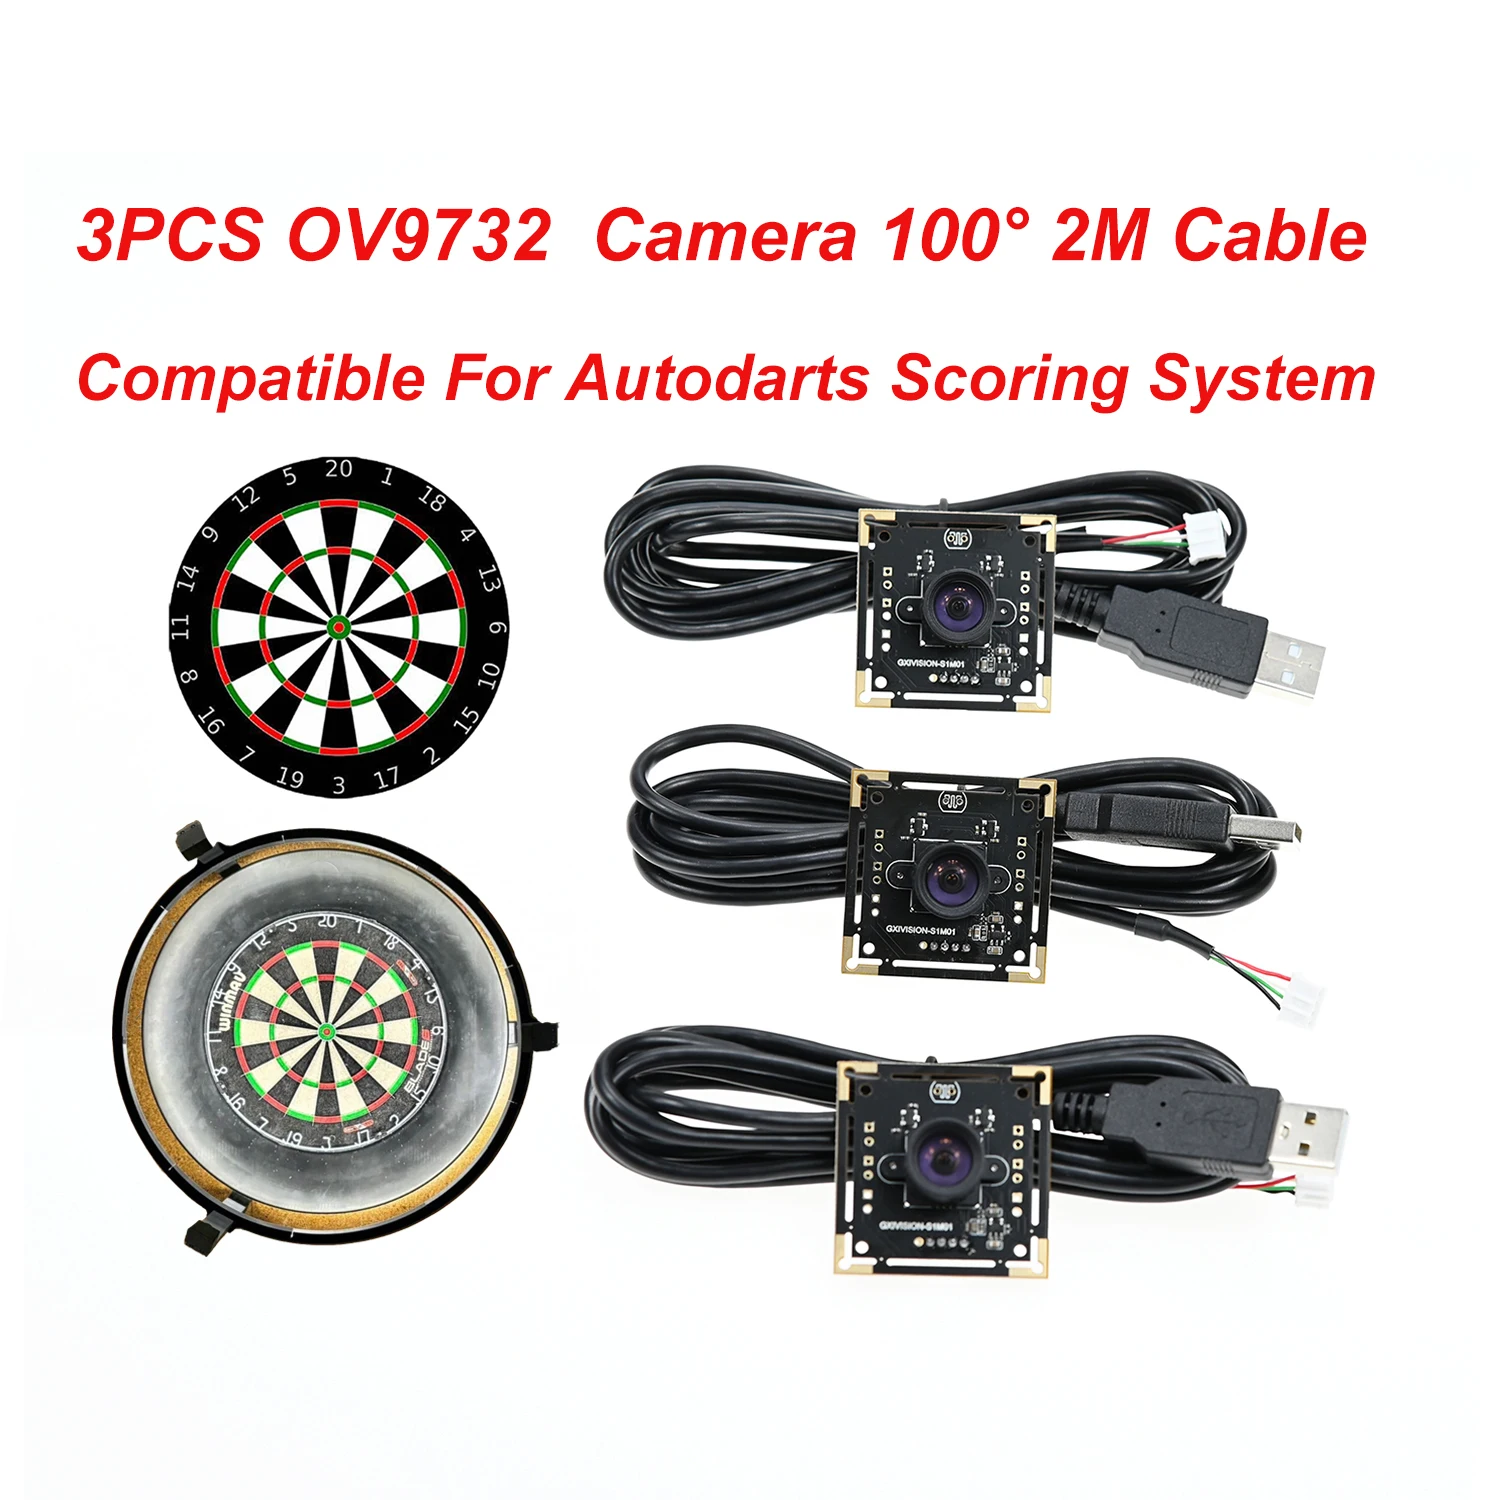 GXIVISION OV9732 1MP 30FPS 2M lanko bovdenu 100 stupňů USB kamera modul, 3ks OV2735、IMX179 webová kamera kompatibilní pro autodarts.io scoring